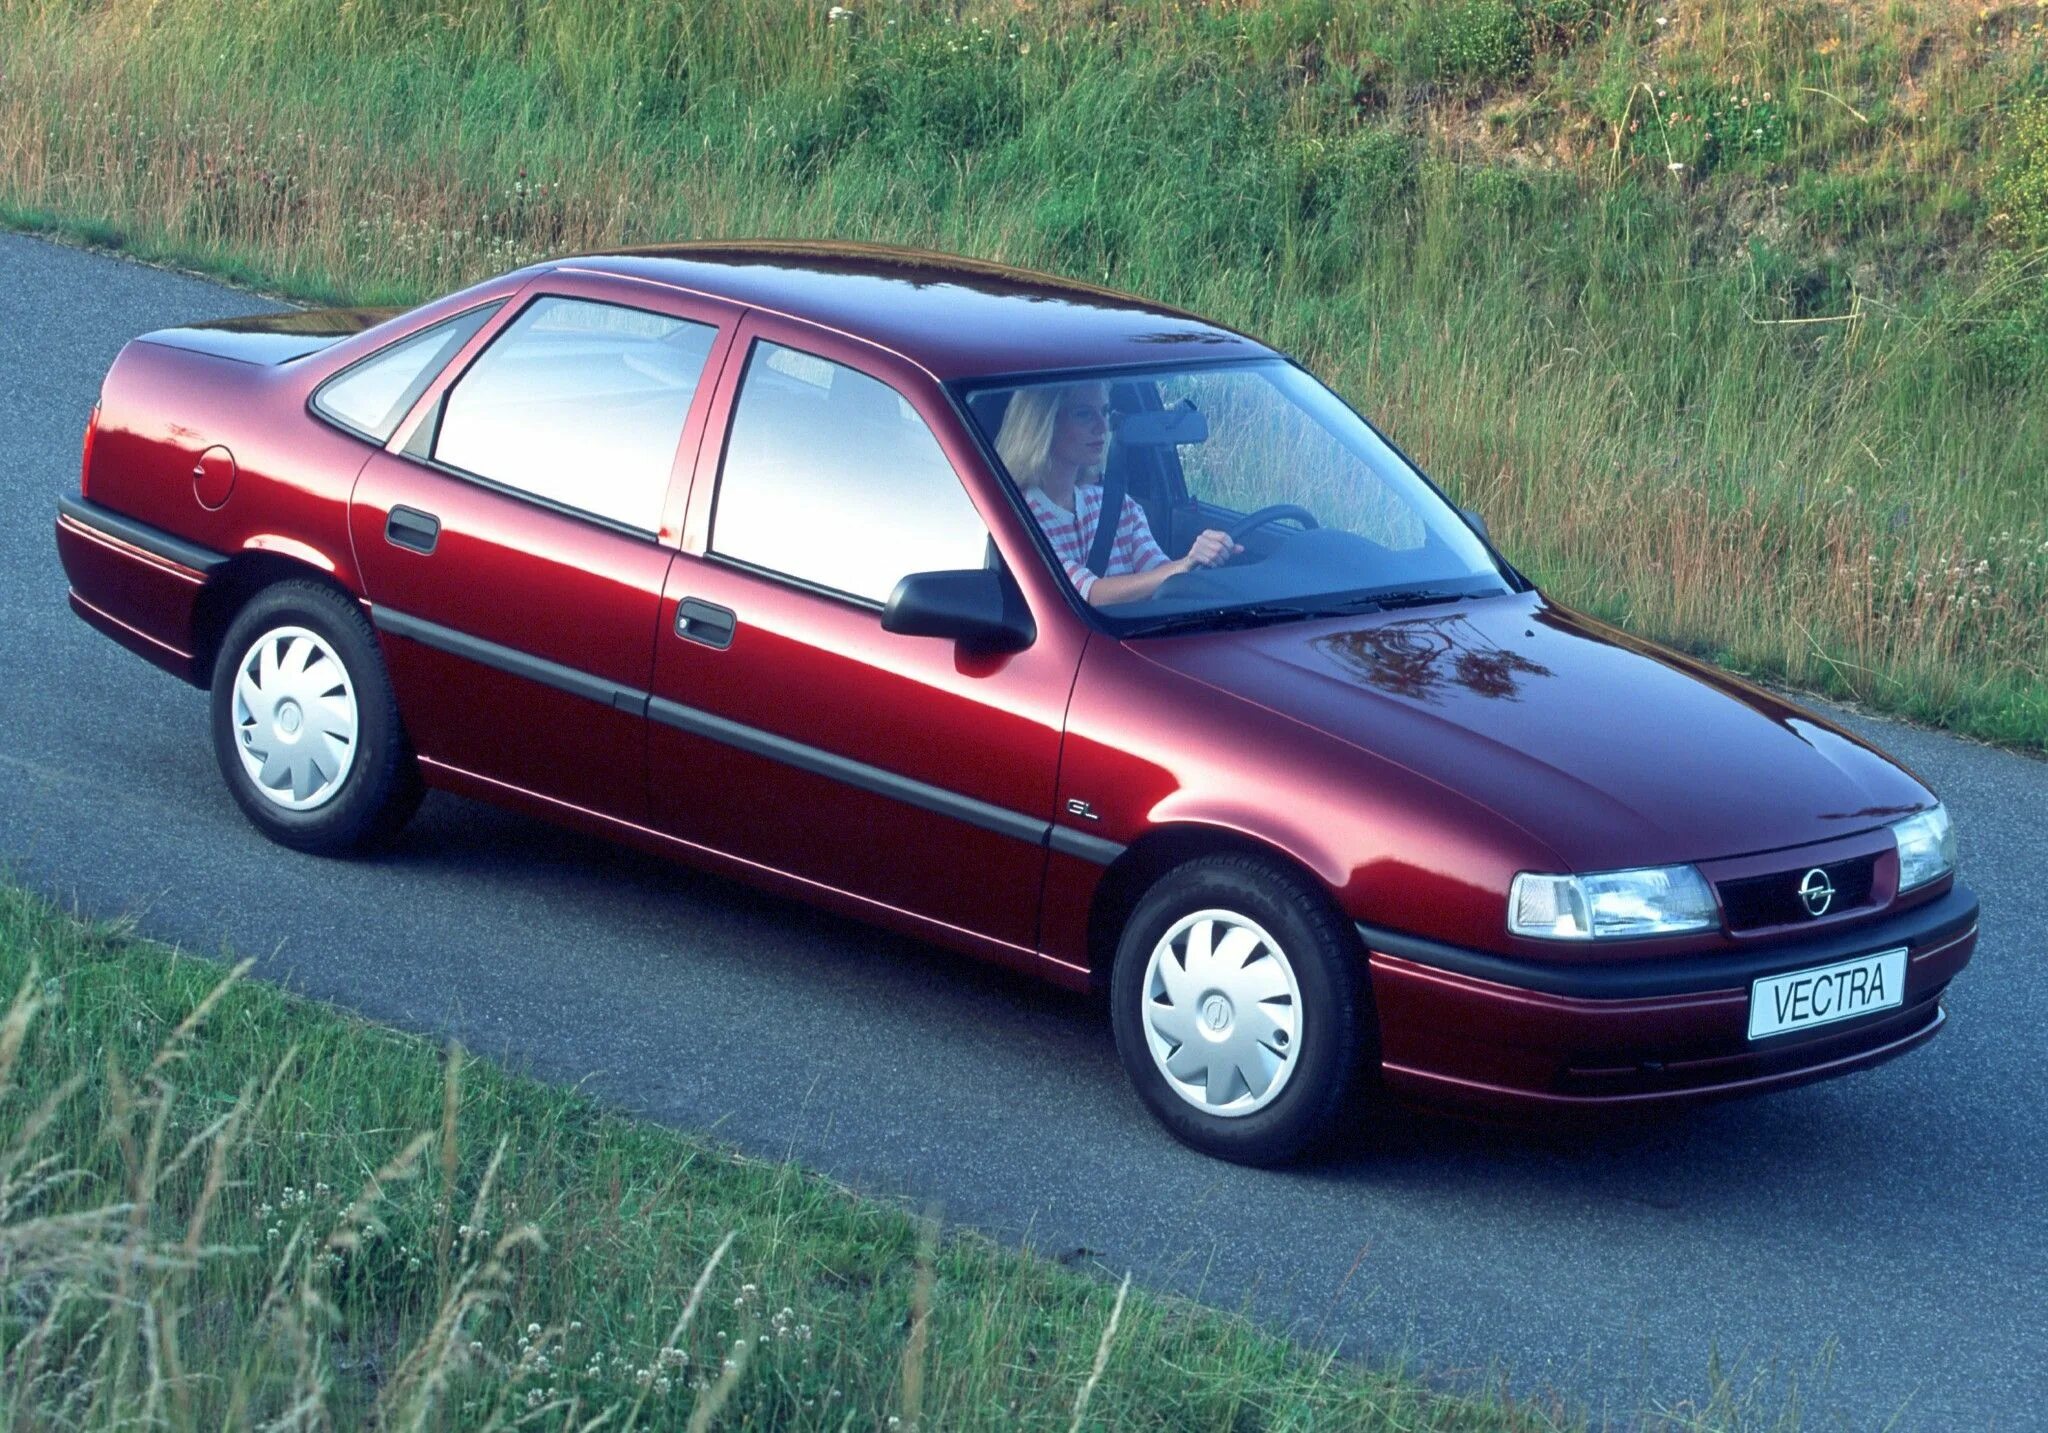 Opel Vectra 1995. Опель Вектра 1995 седан. Opel Vectra 1.8. Opel Vectra a 1988 1995 седан.